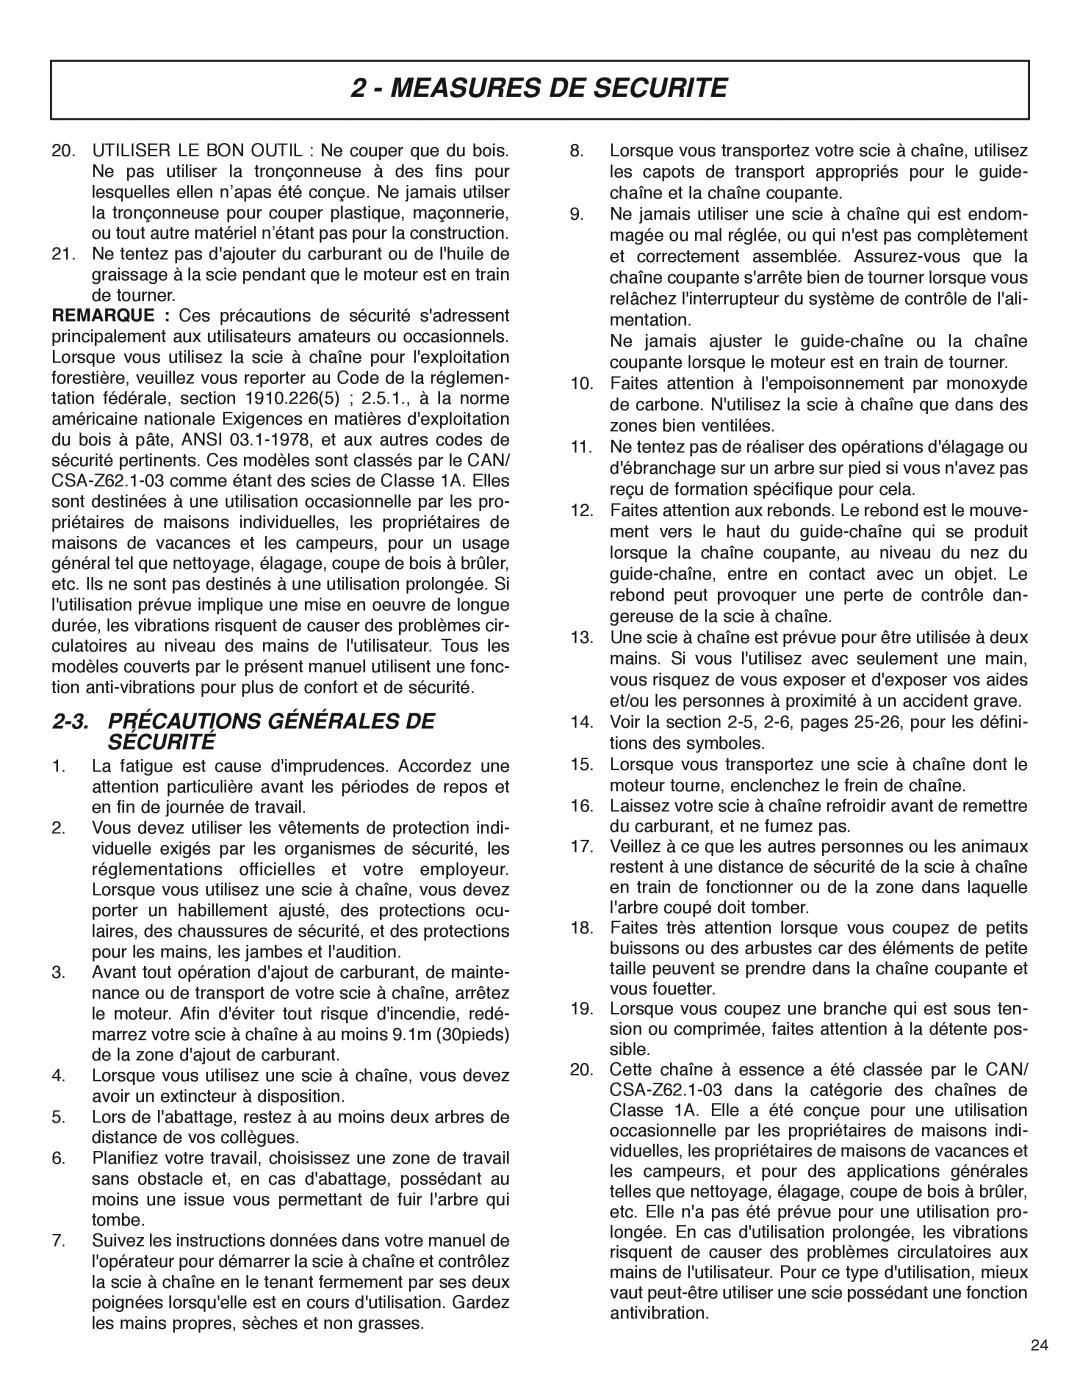 McCulloch MS4016PAVCC, MS4018PAVCC user manual 2-3. PRÉCAUTIONS GÉNÉRALES DE SÉCURITÉ, Measures De Securite 